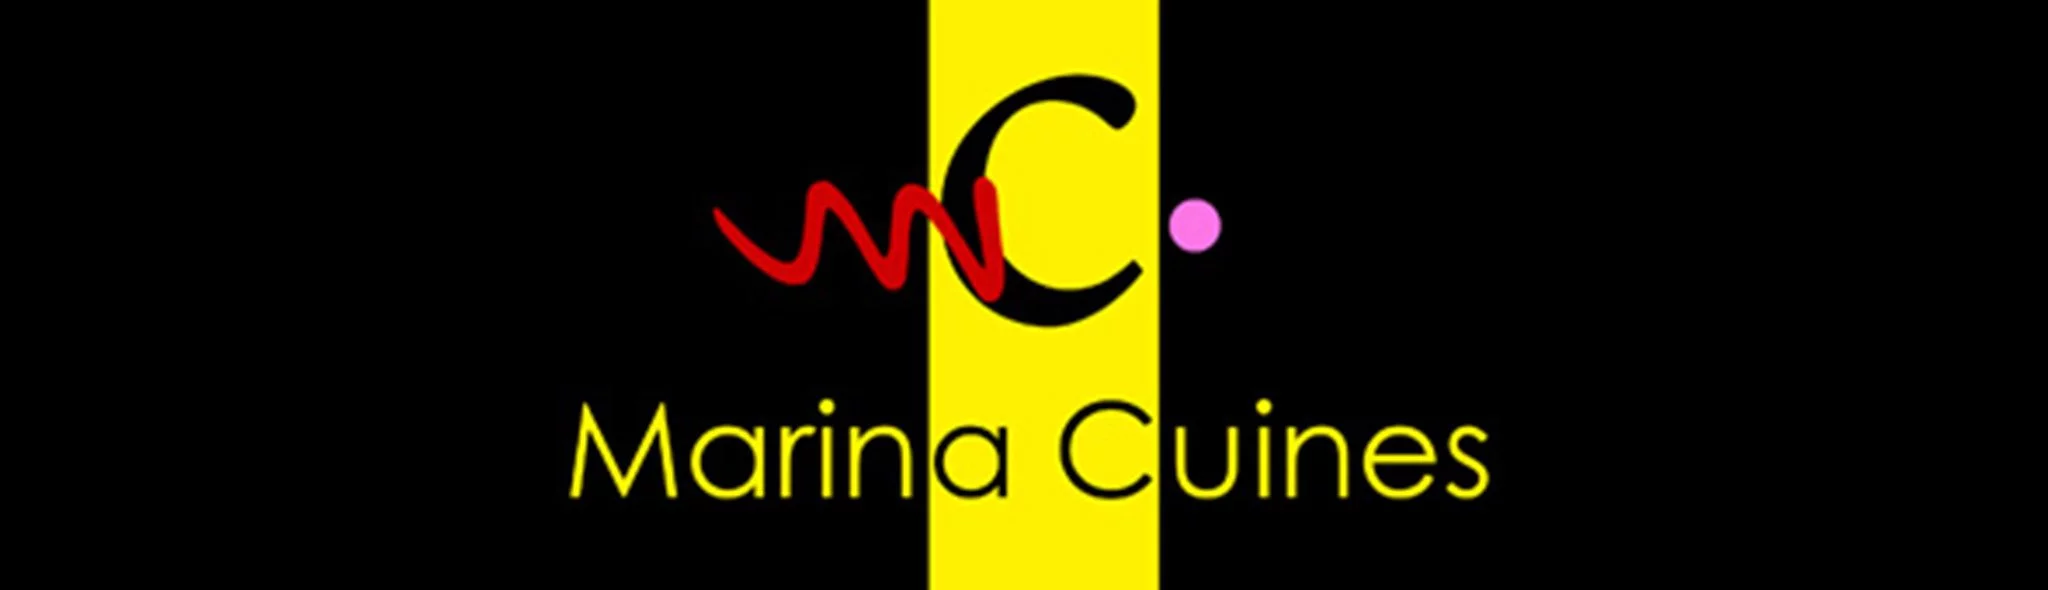 Logotipo Marina Cuines